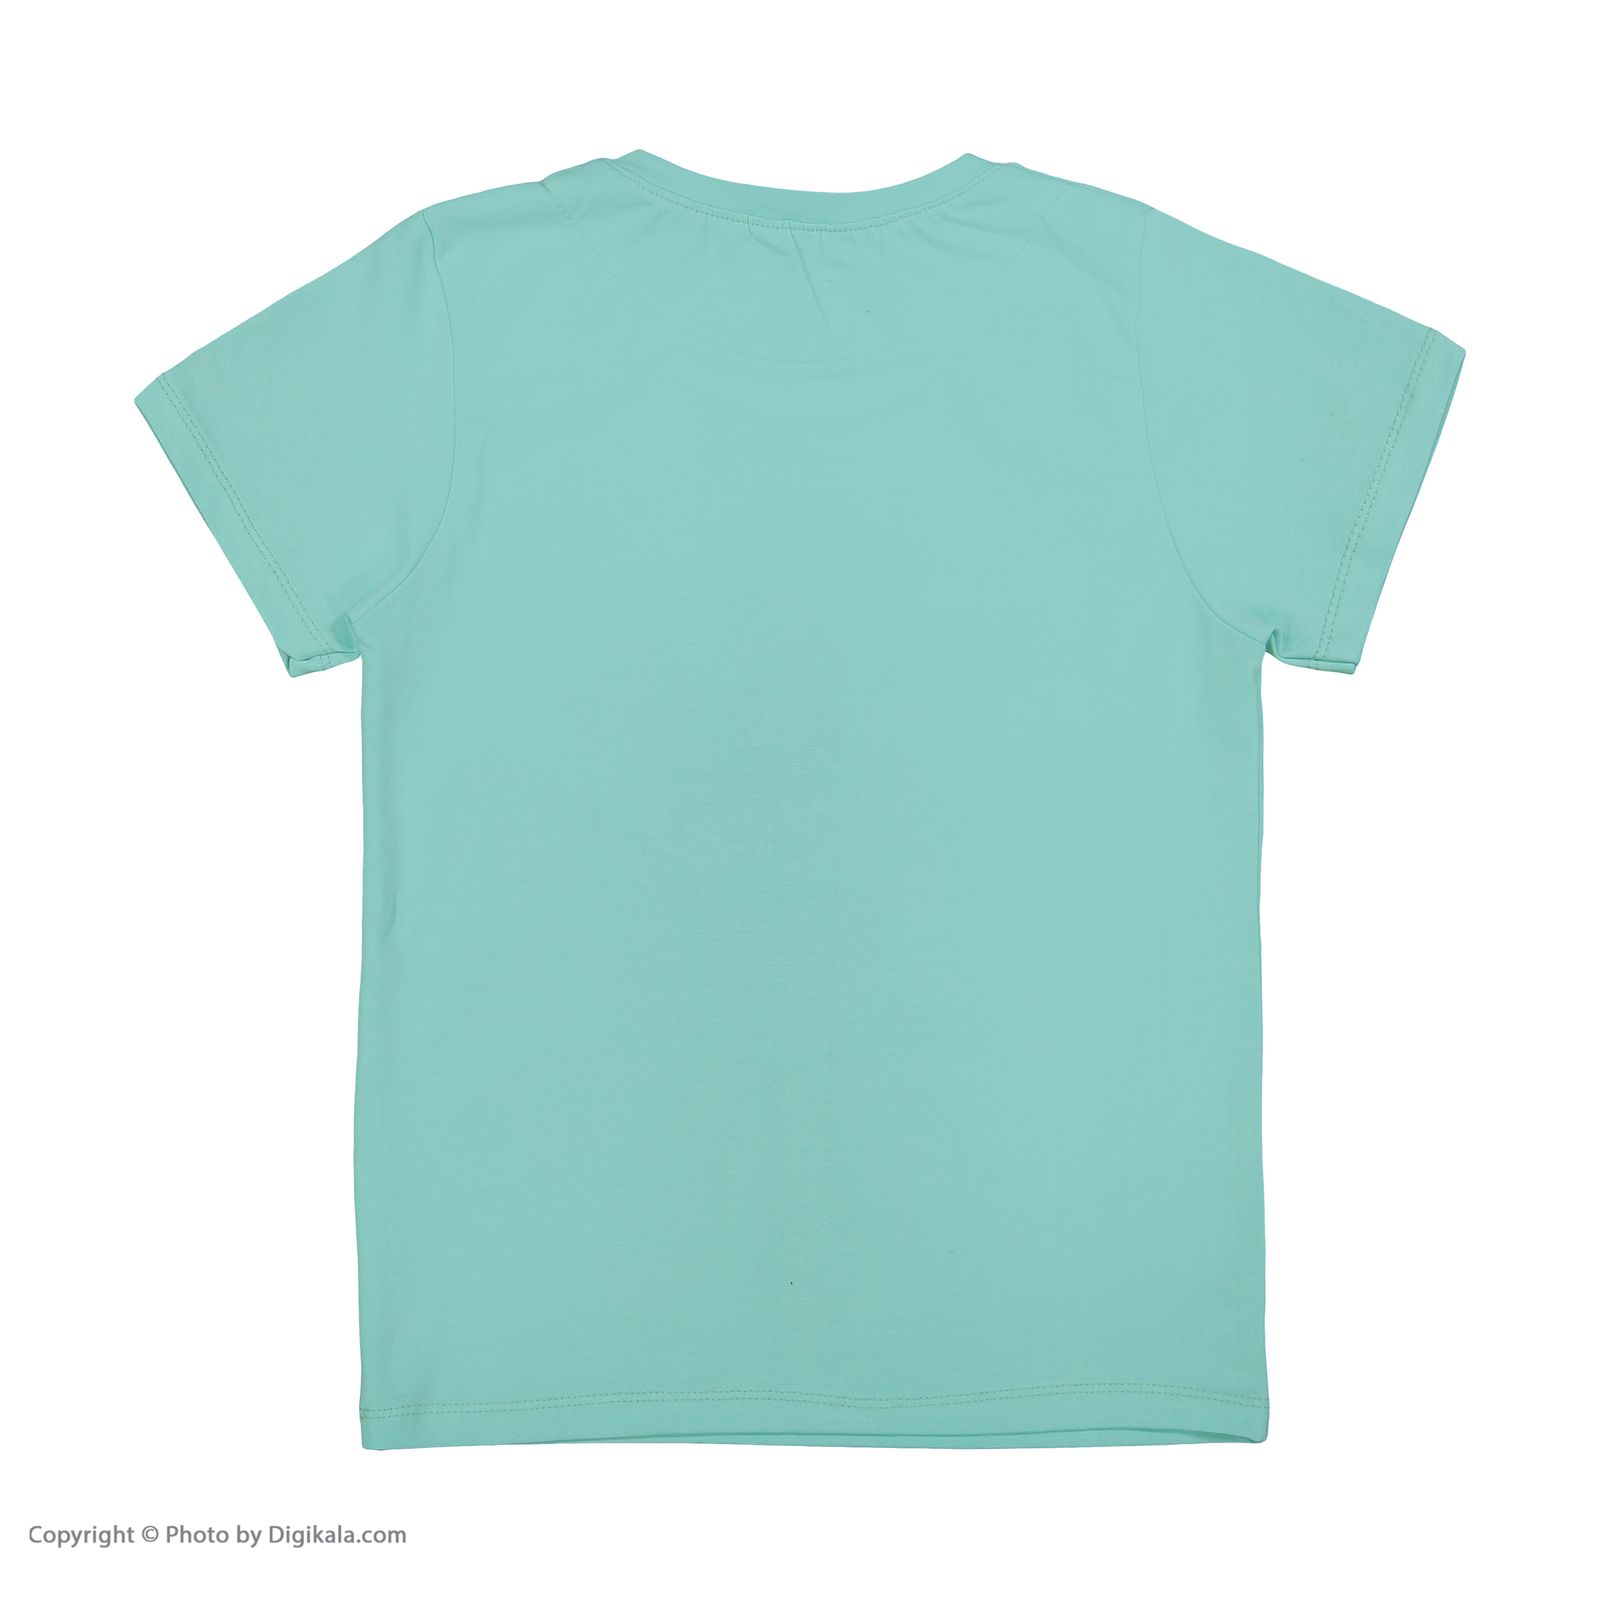 ست تی شرت و شلوار دخترانه مادر مدل 2041101-54 -  - 4